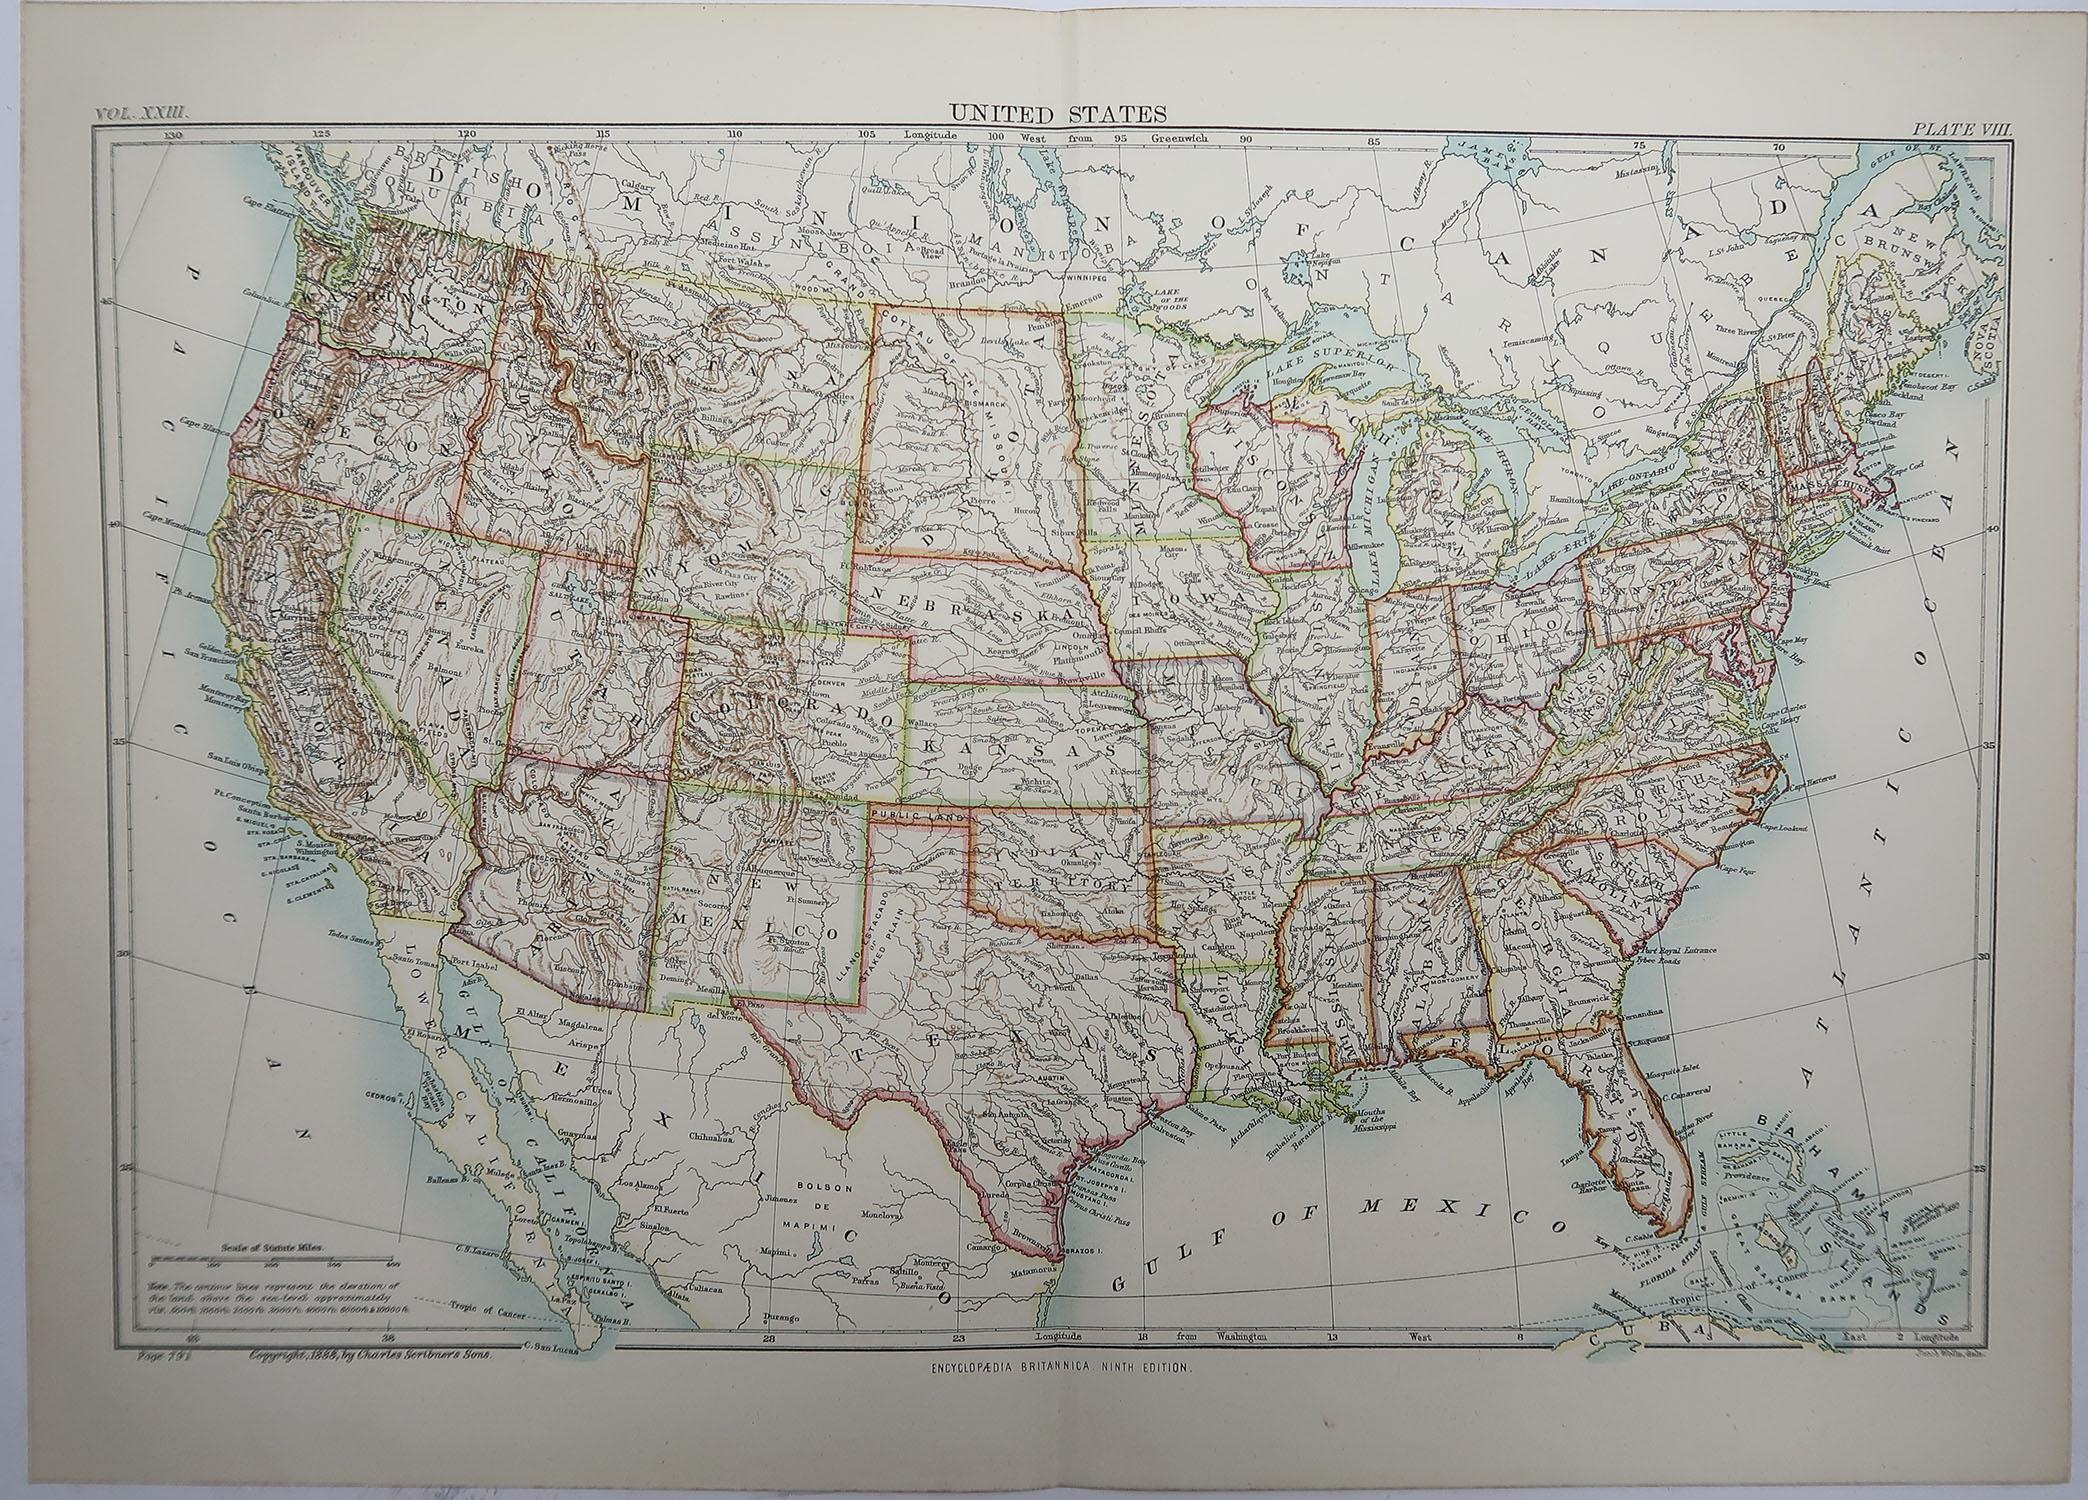 Scottish Original Antique Map of The United States of America, 1889